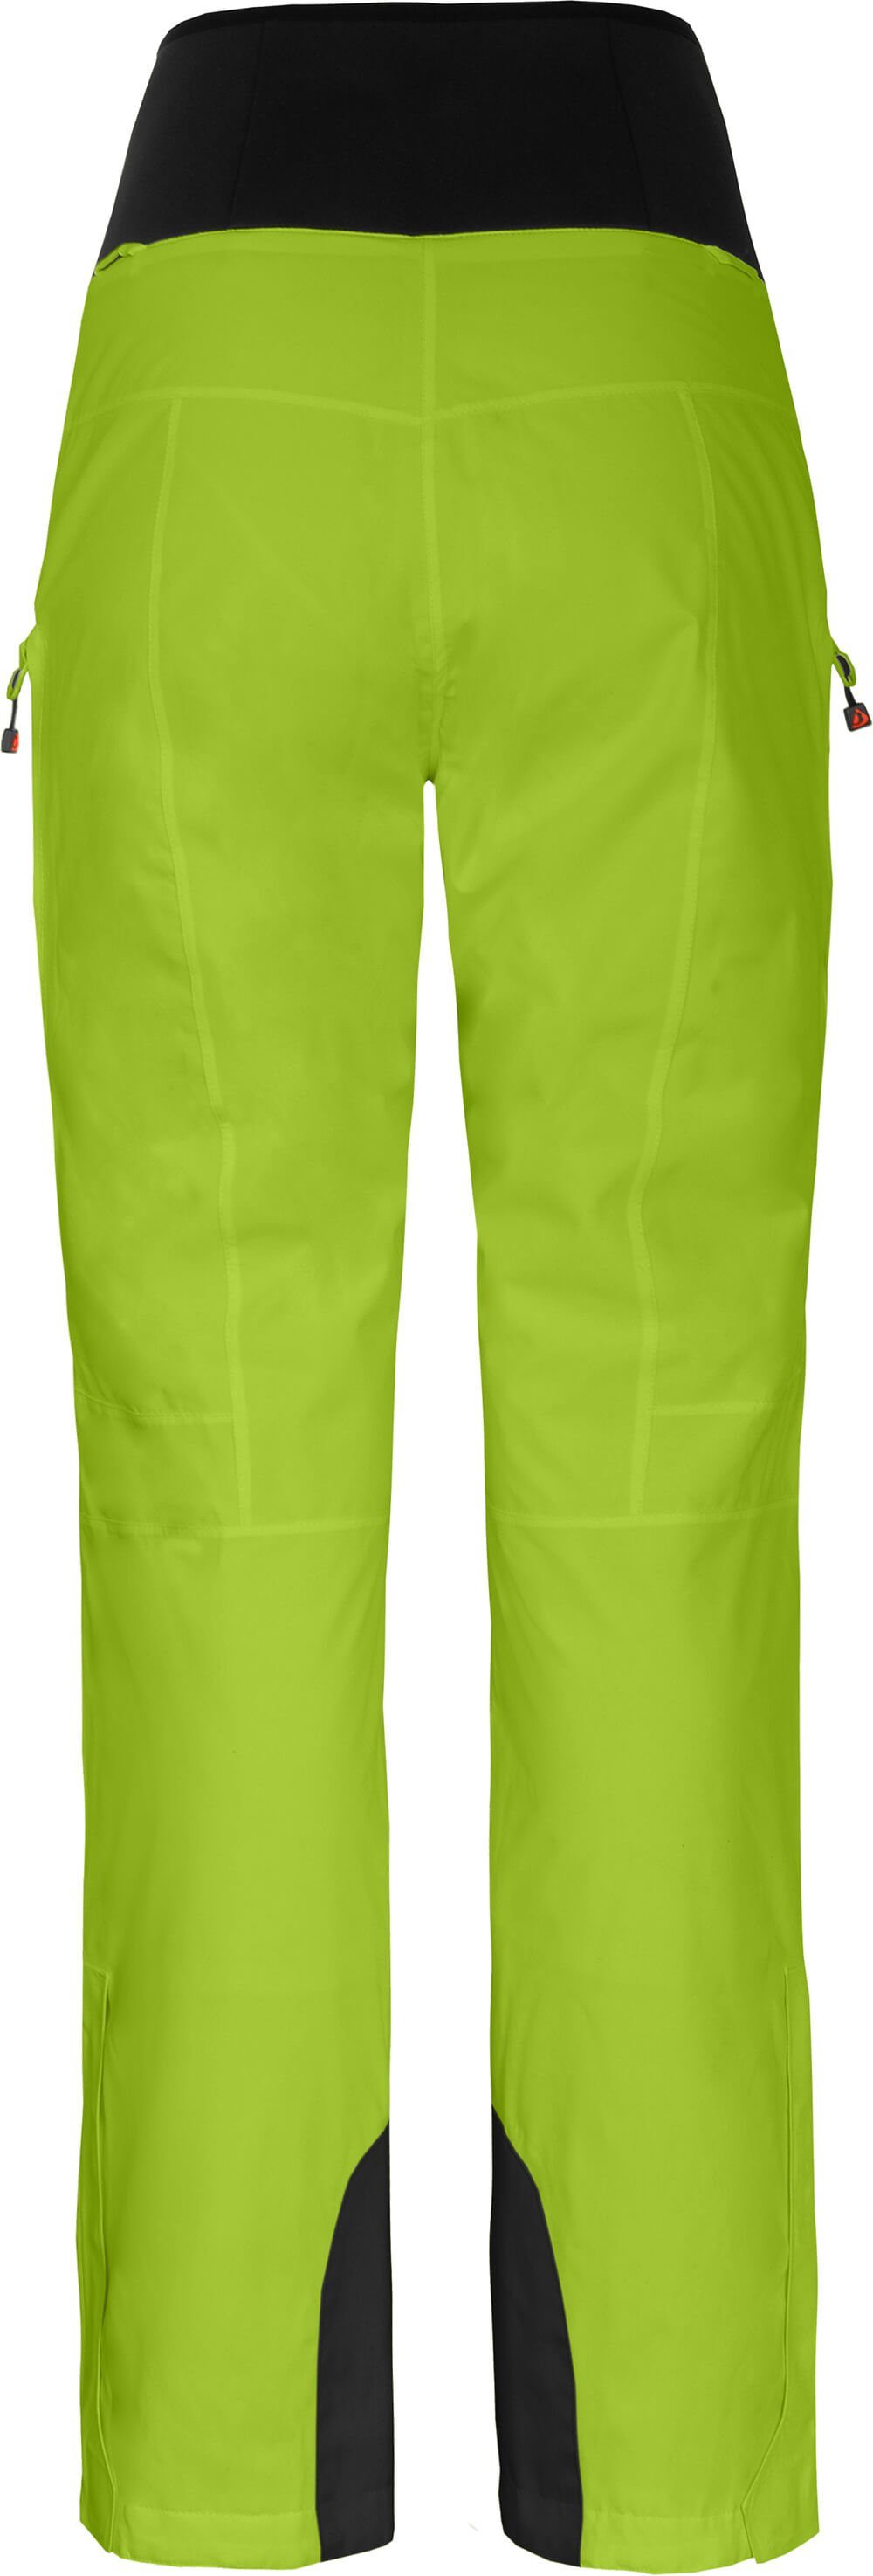 Slim Skihose Wassersäule, Normalgrößen, grün lime MIEN mm wattiert, Damen Bergson Skihose, 20000